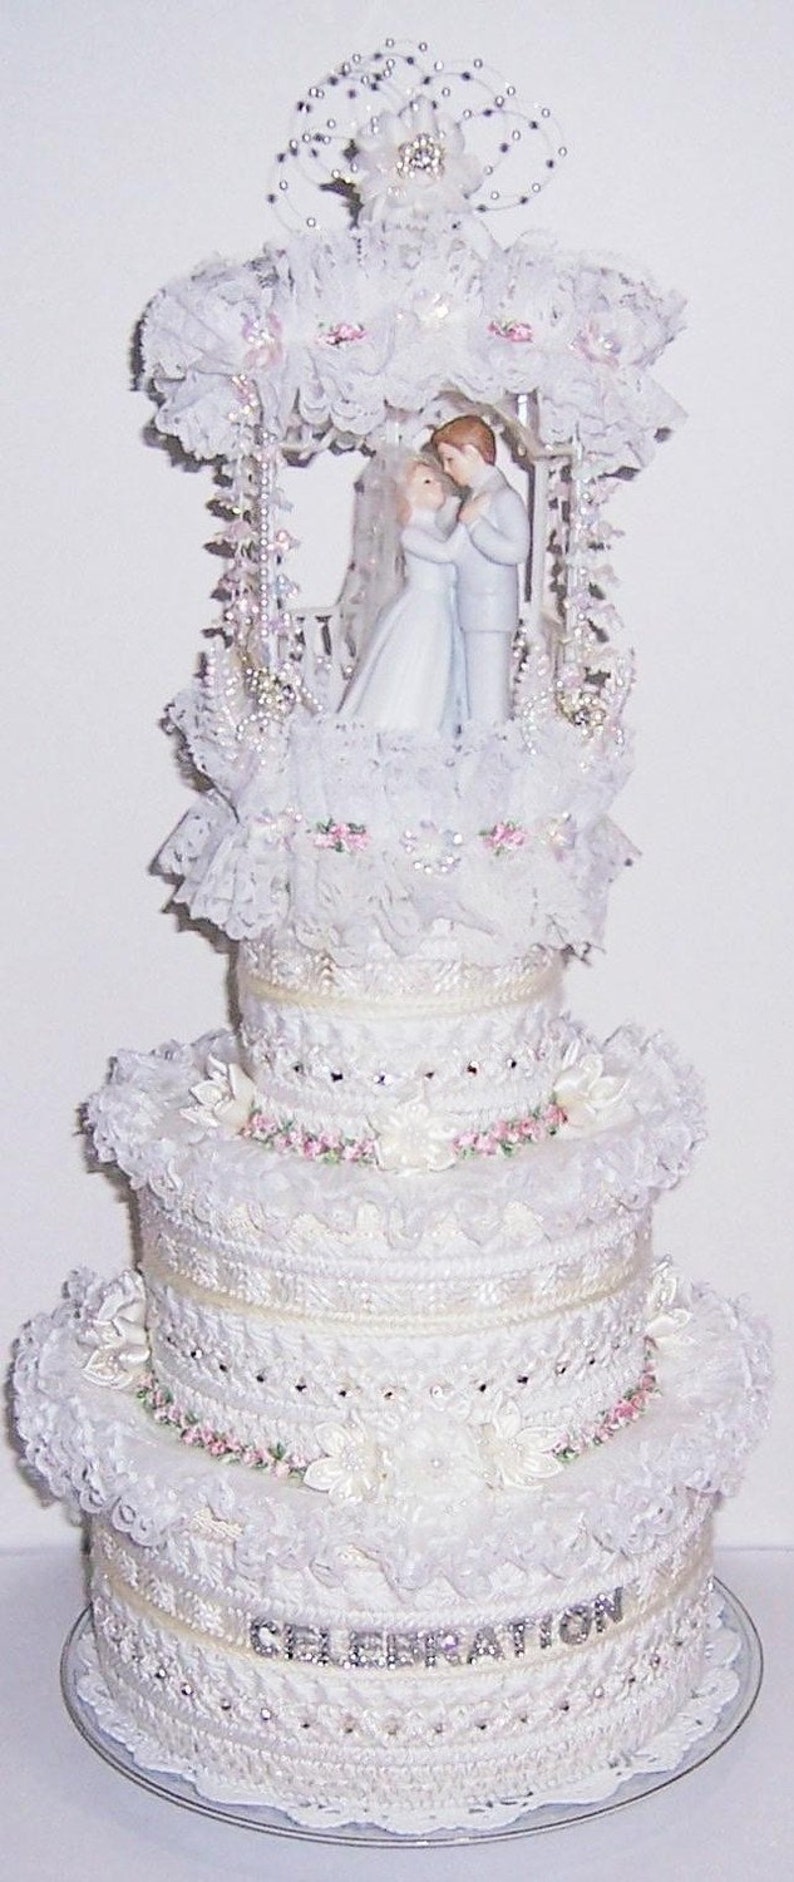 Wedding Cake Pattern...Digital image 1